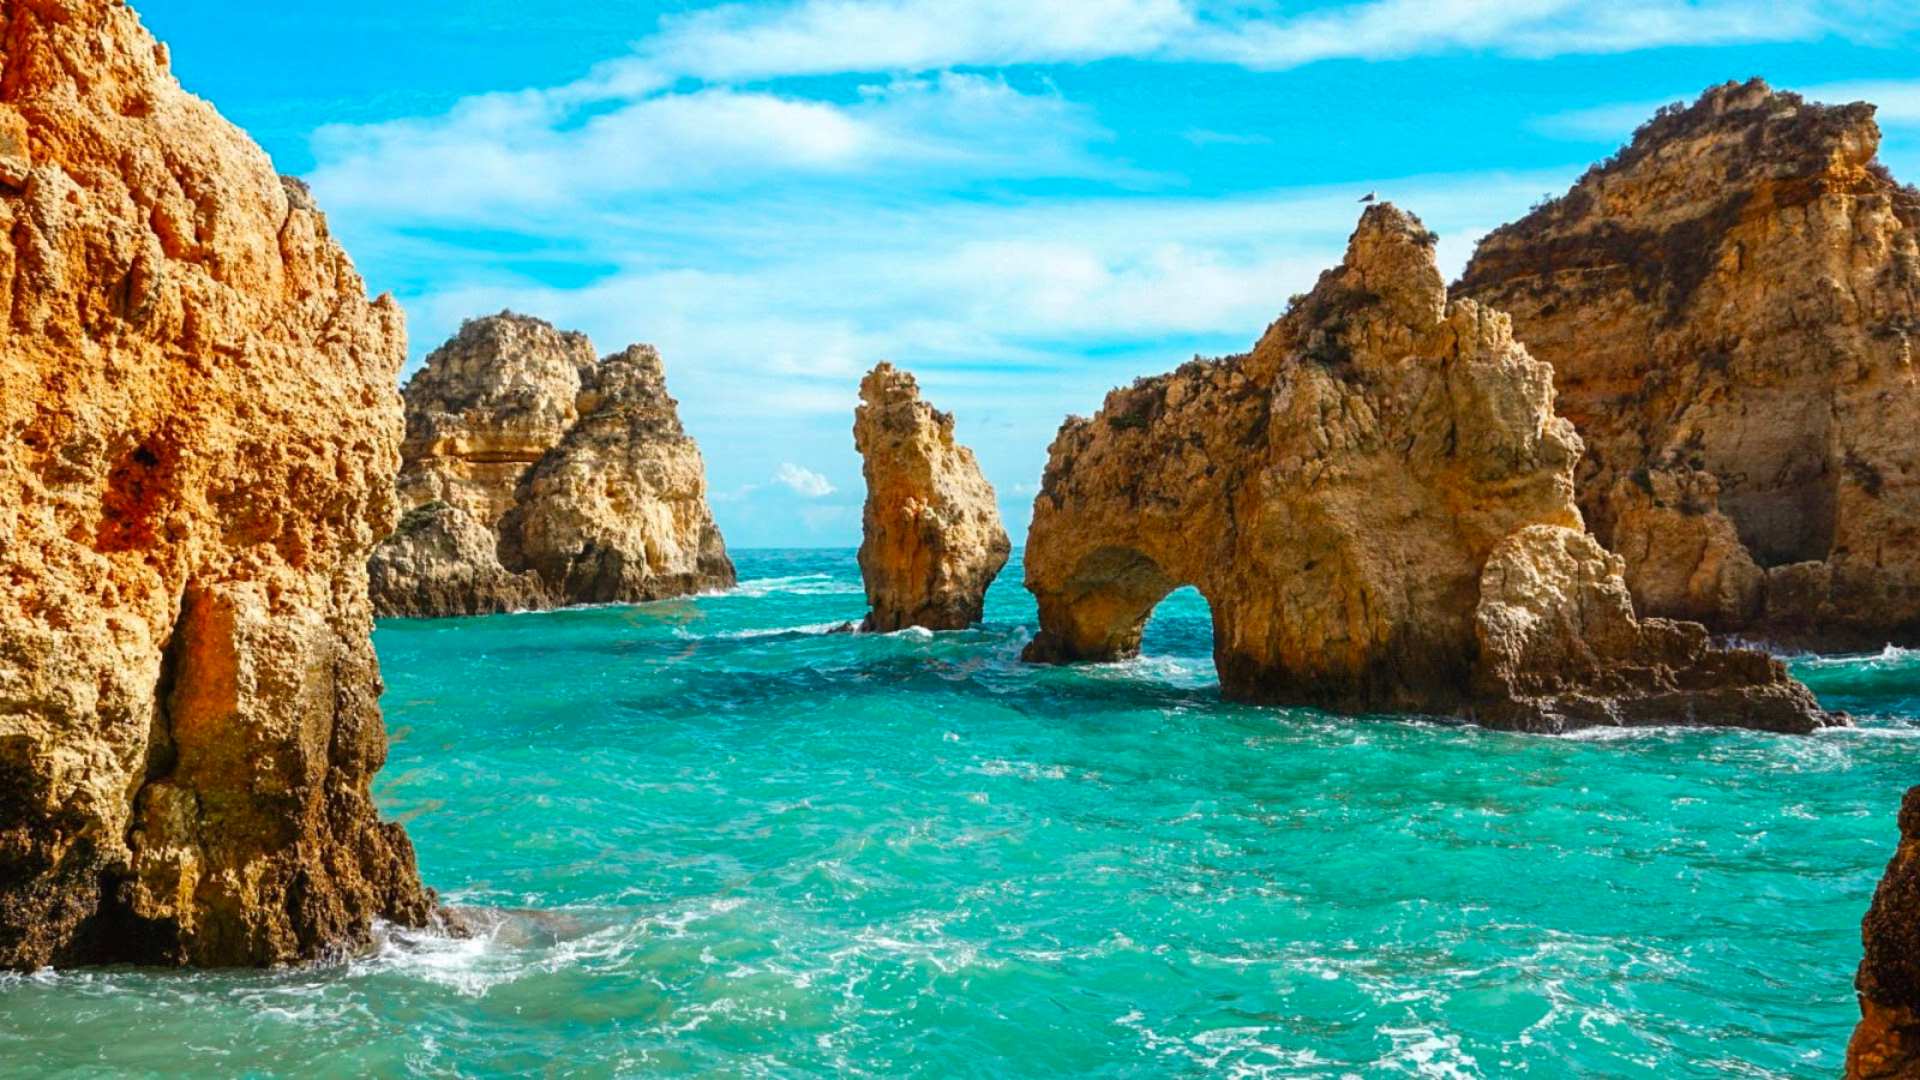 Vacanta in minunatul Algarve, Portugalia – 285 euro (zbor + cazare) – cunoscut pentru plaje exotice